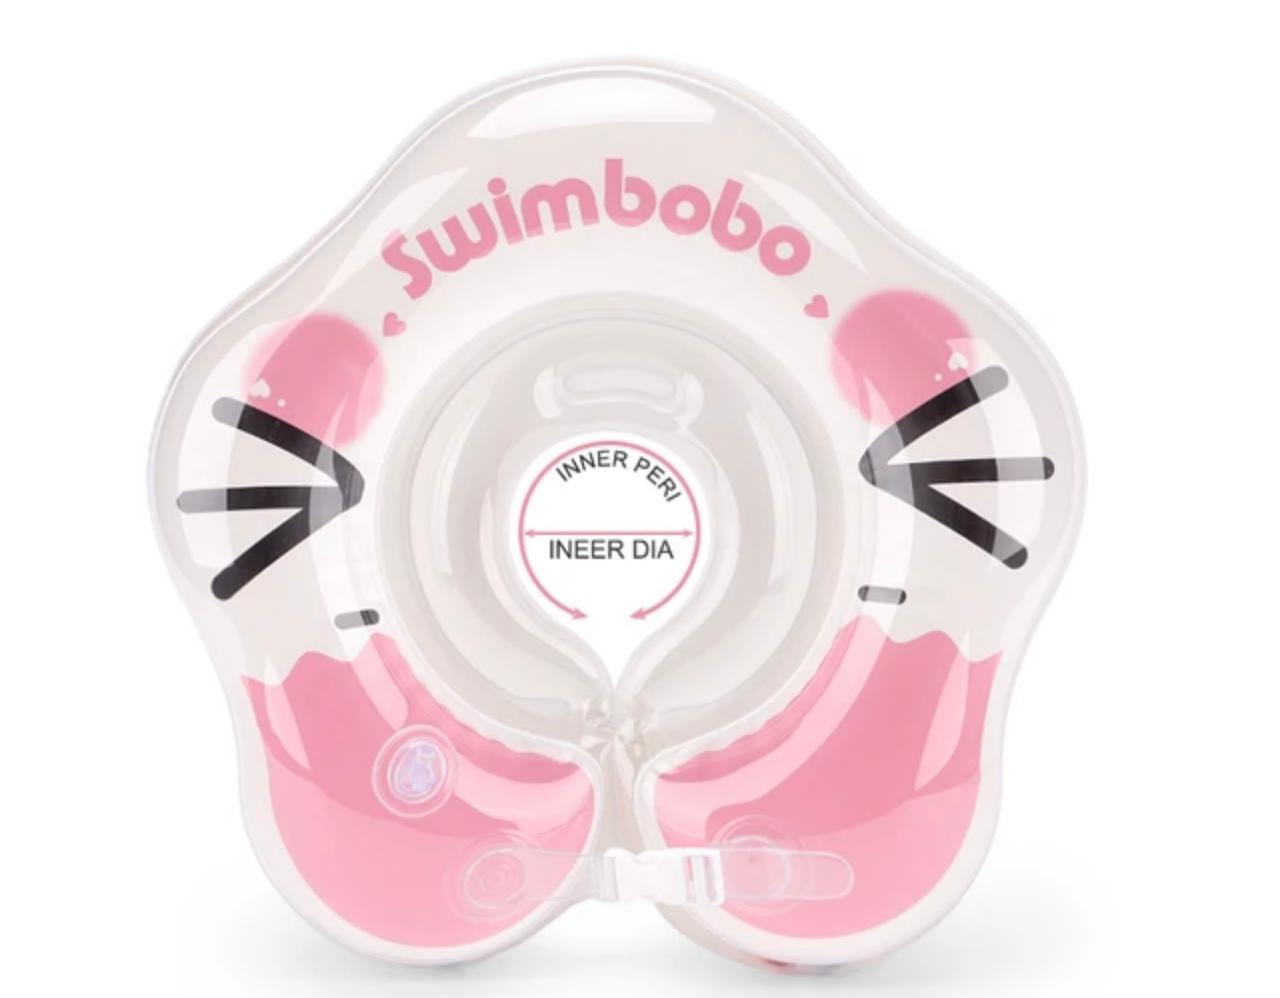 Swimbobo Baby'Swimming Collar